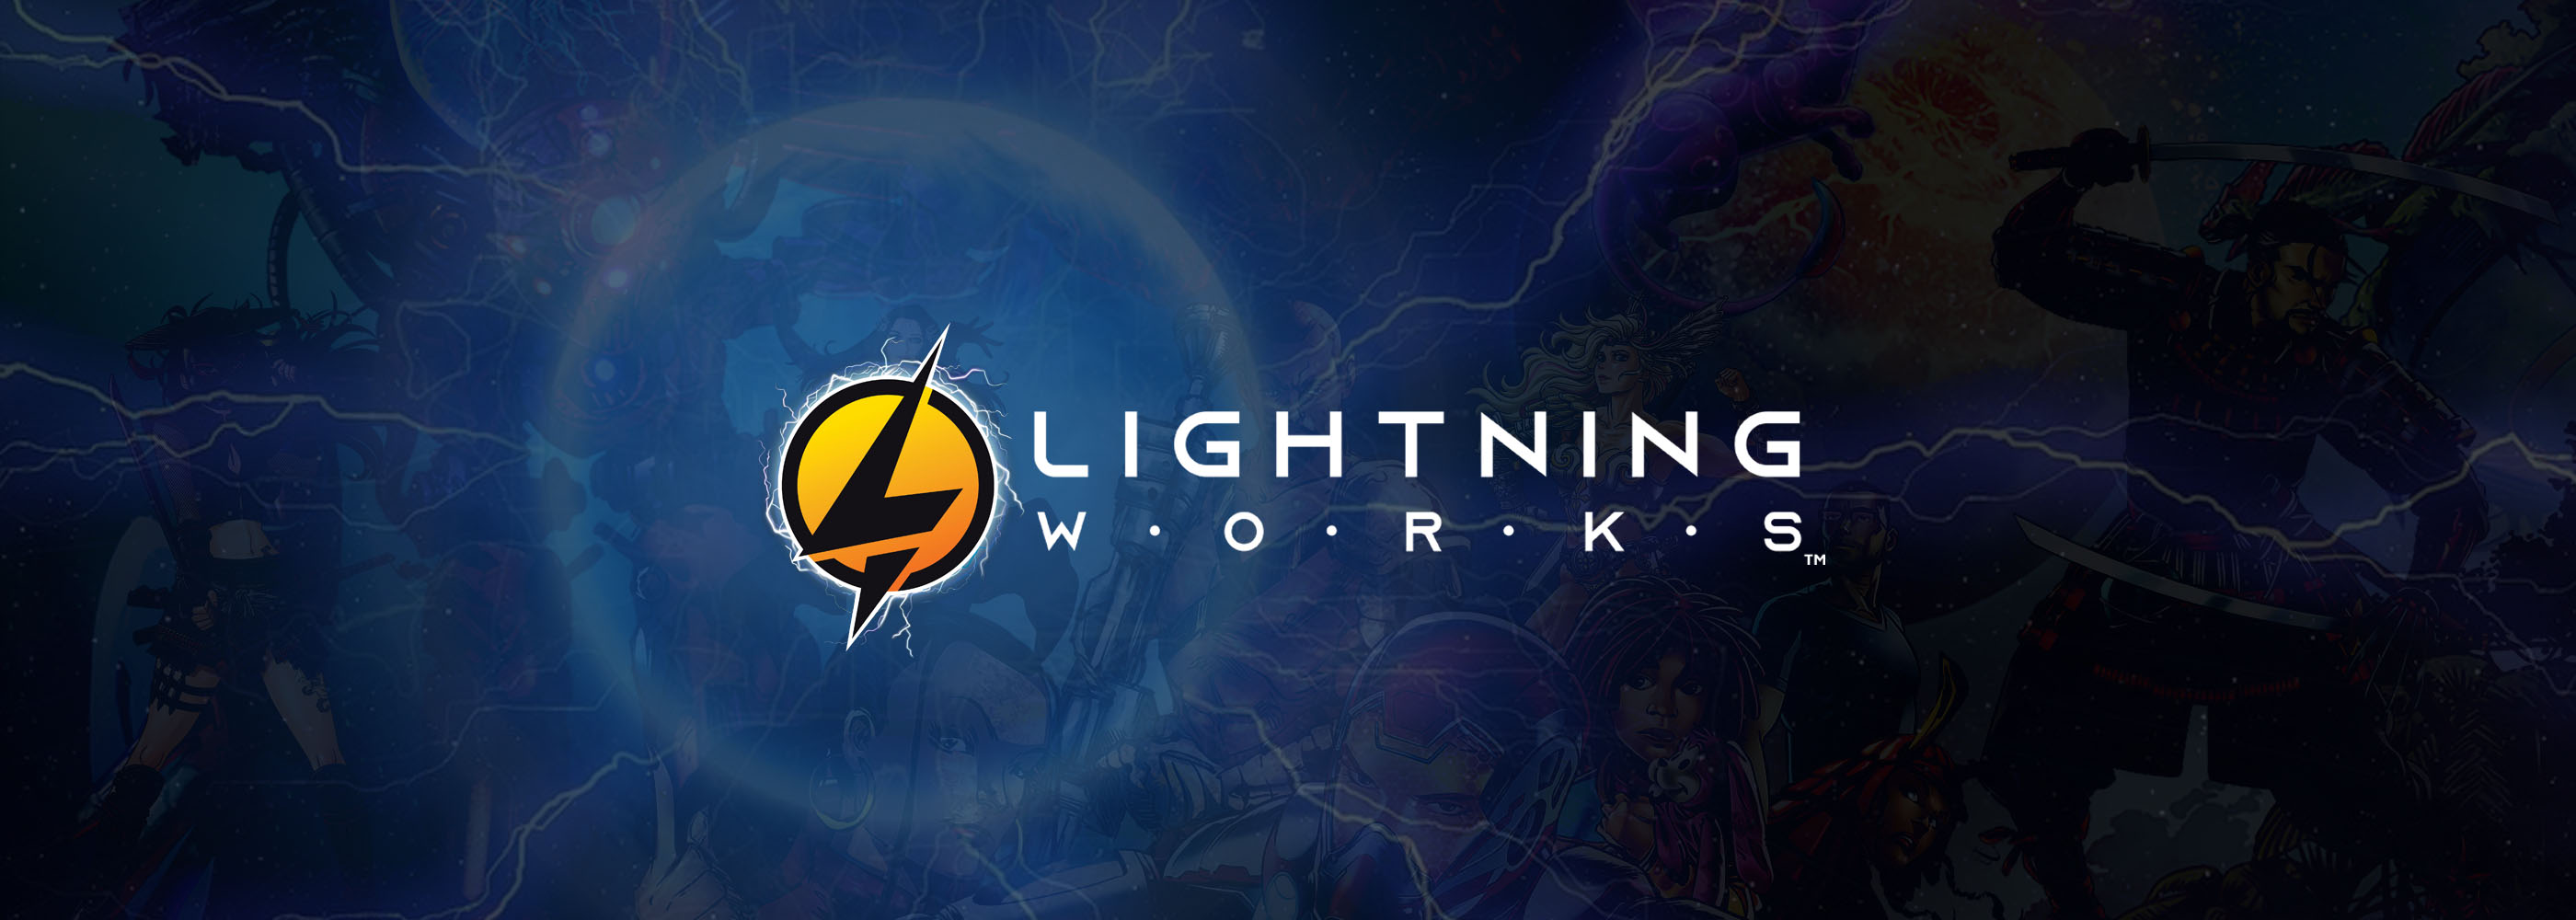 Lightningworks7 banner